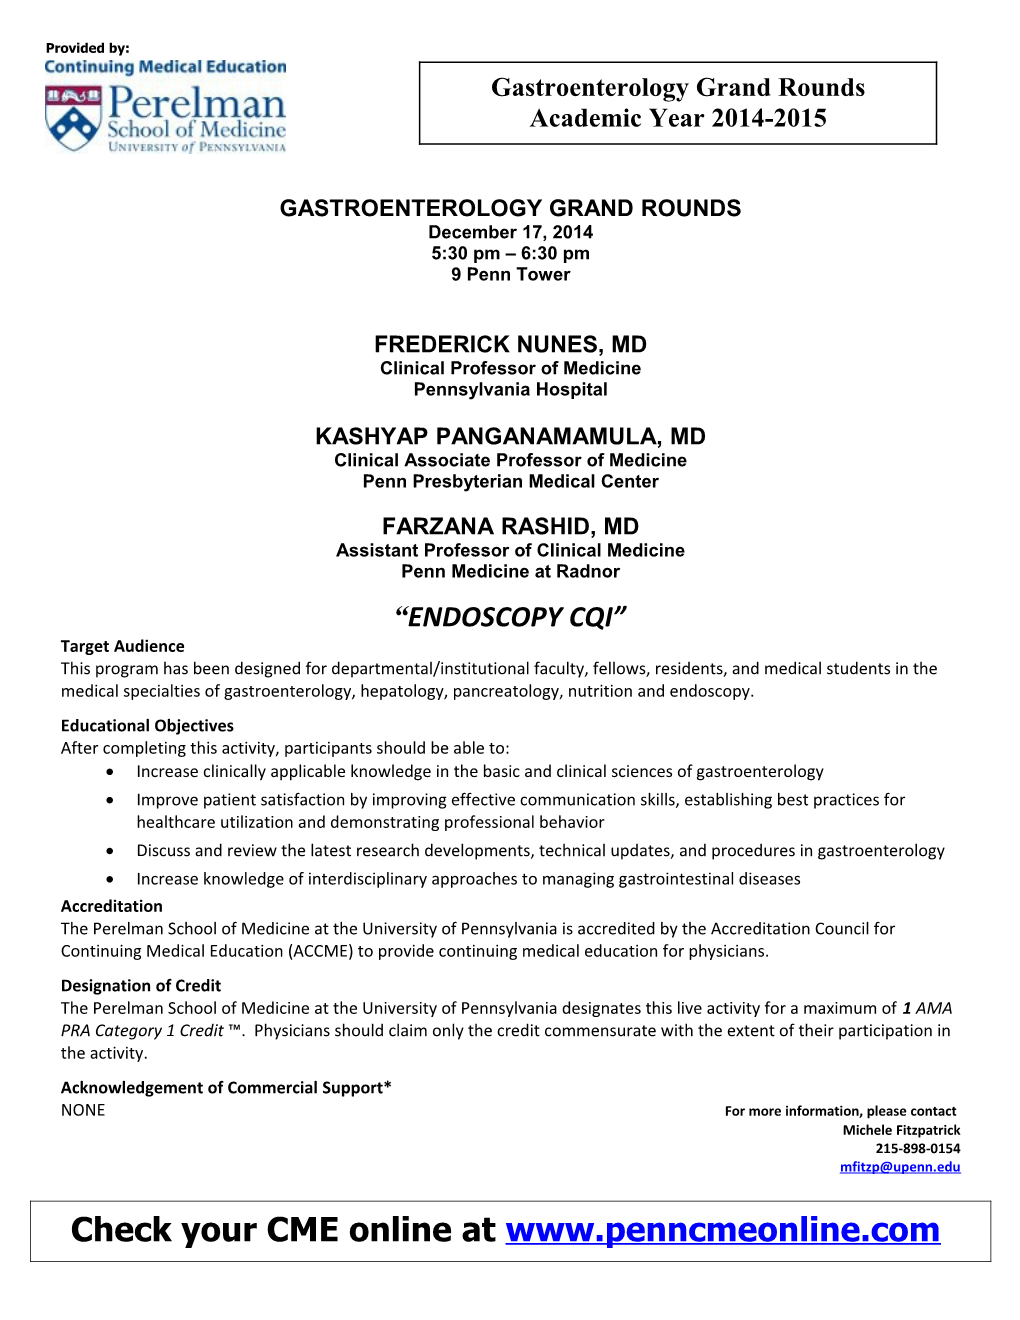 Gastroenterology Grand Rounds